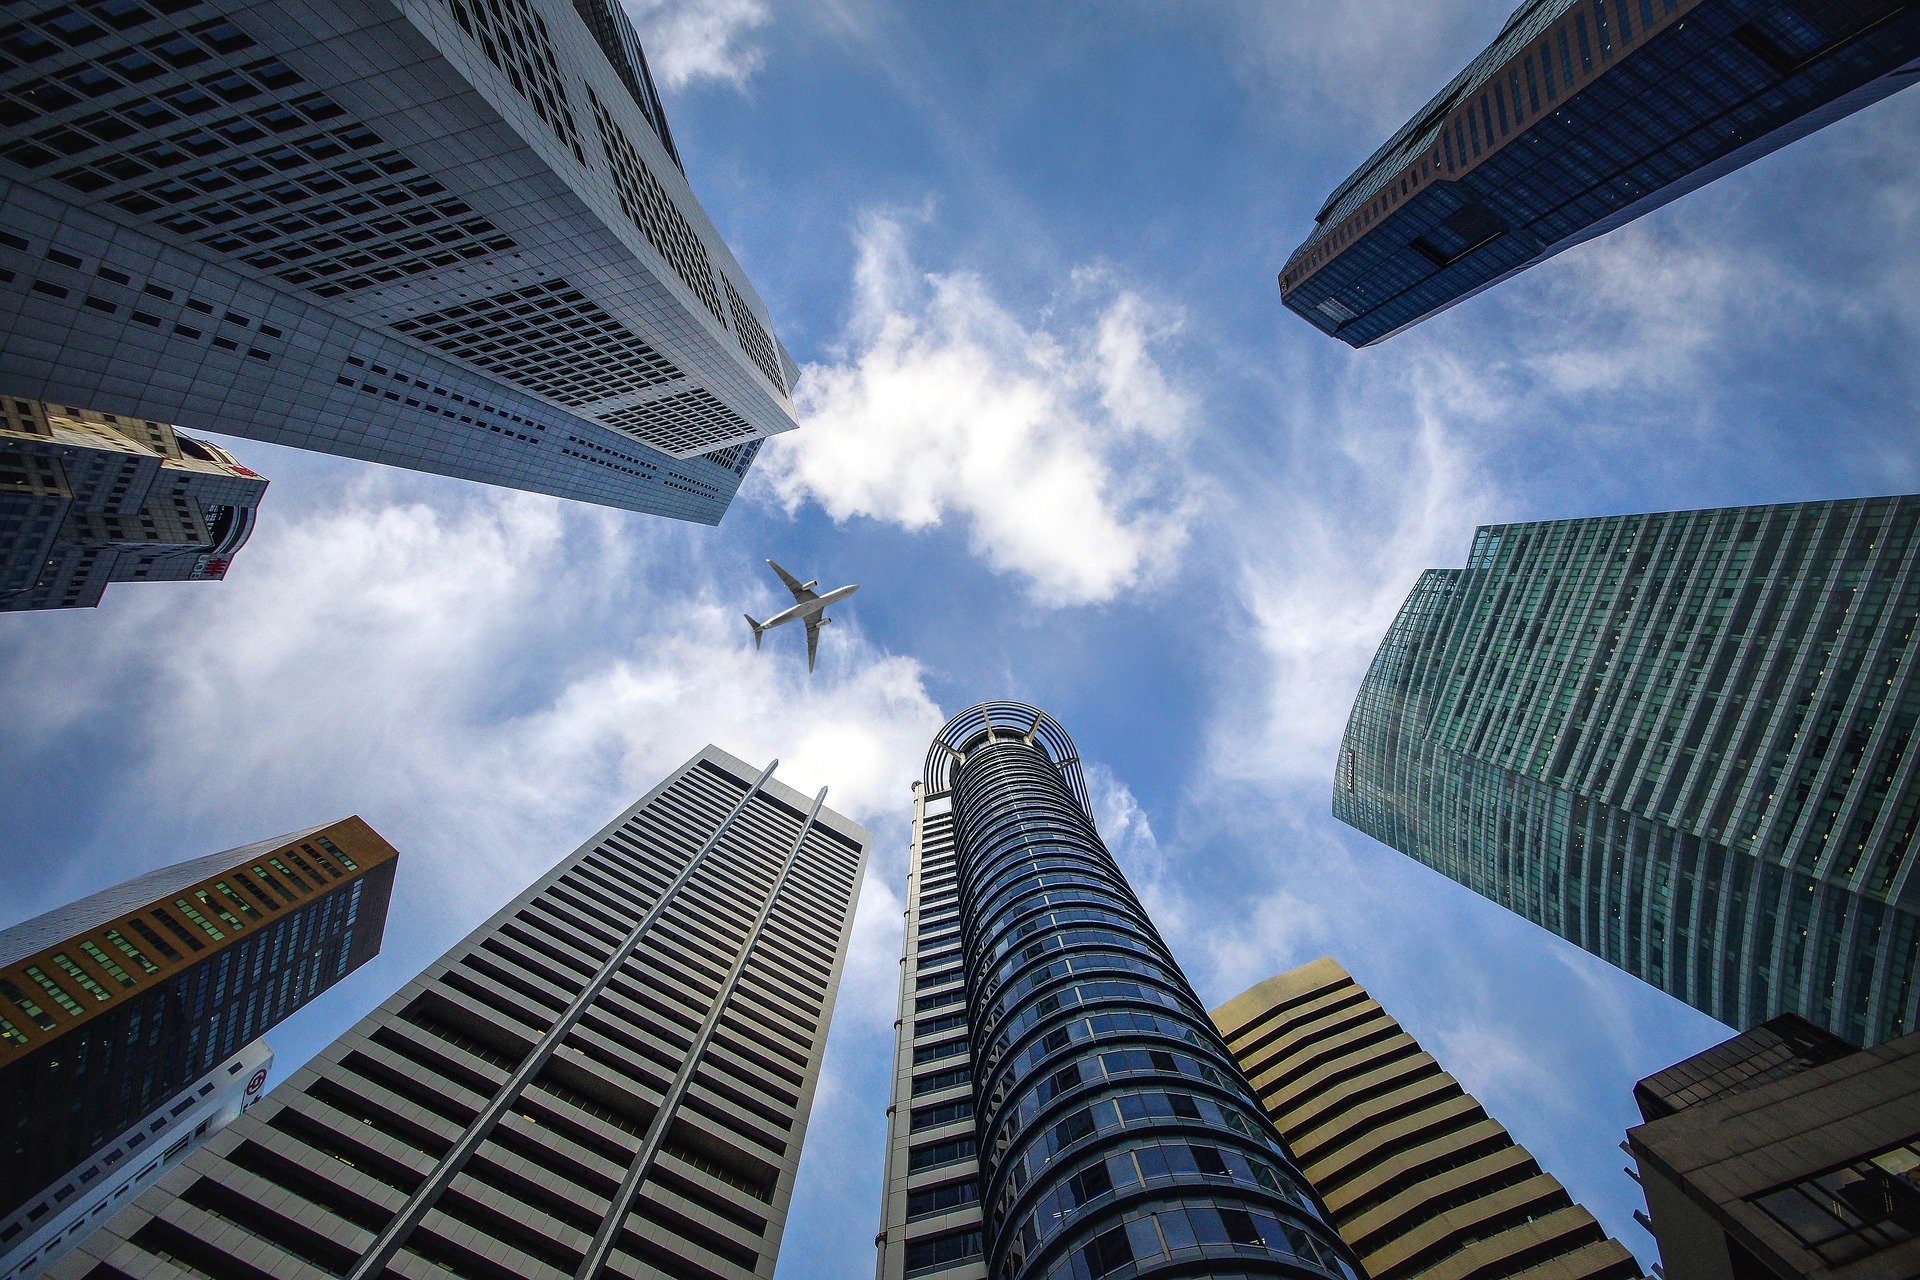 perspectiva desde el suelo de una ciudad con edificios y va volando un avión